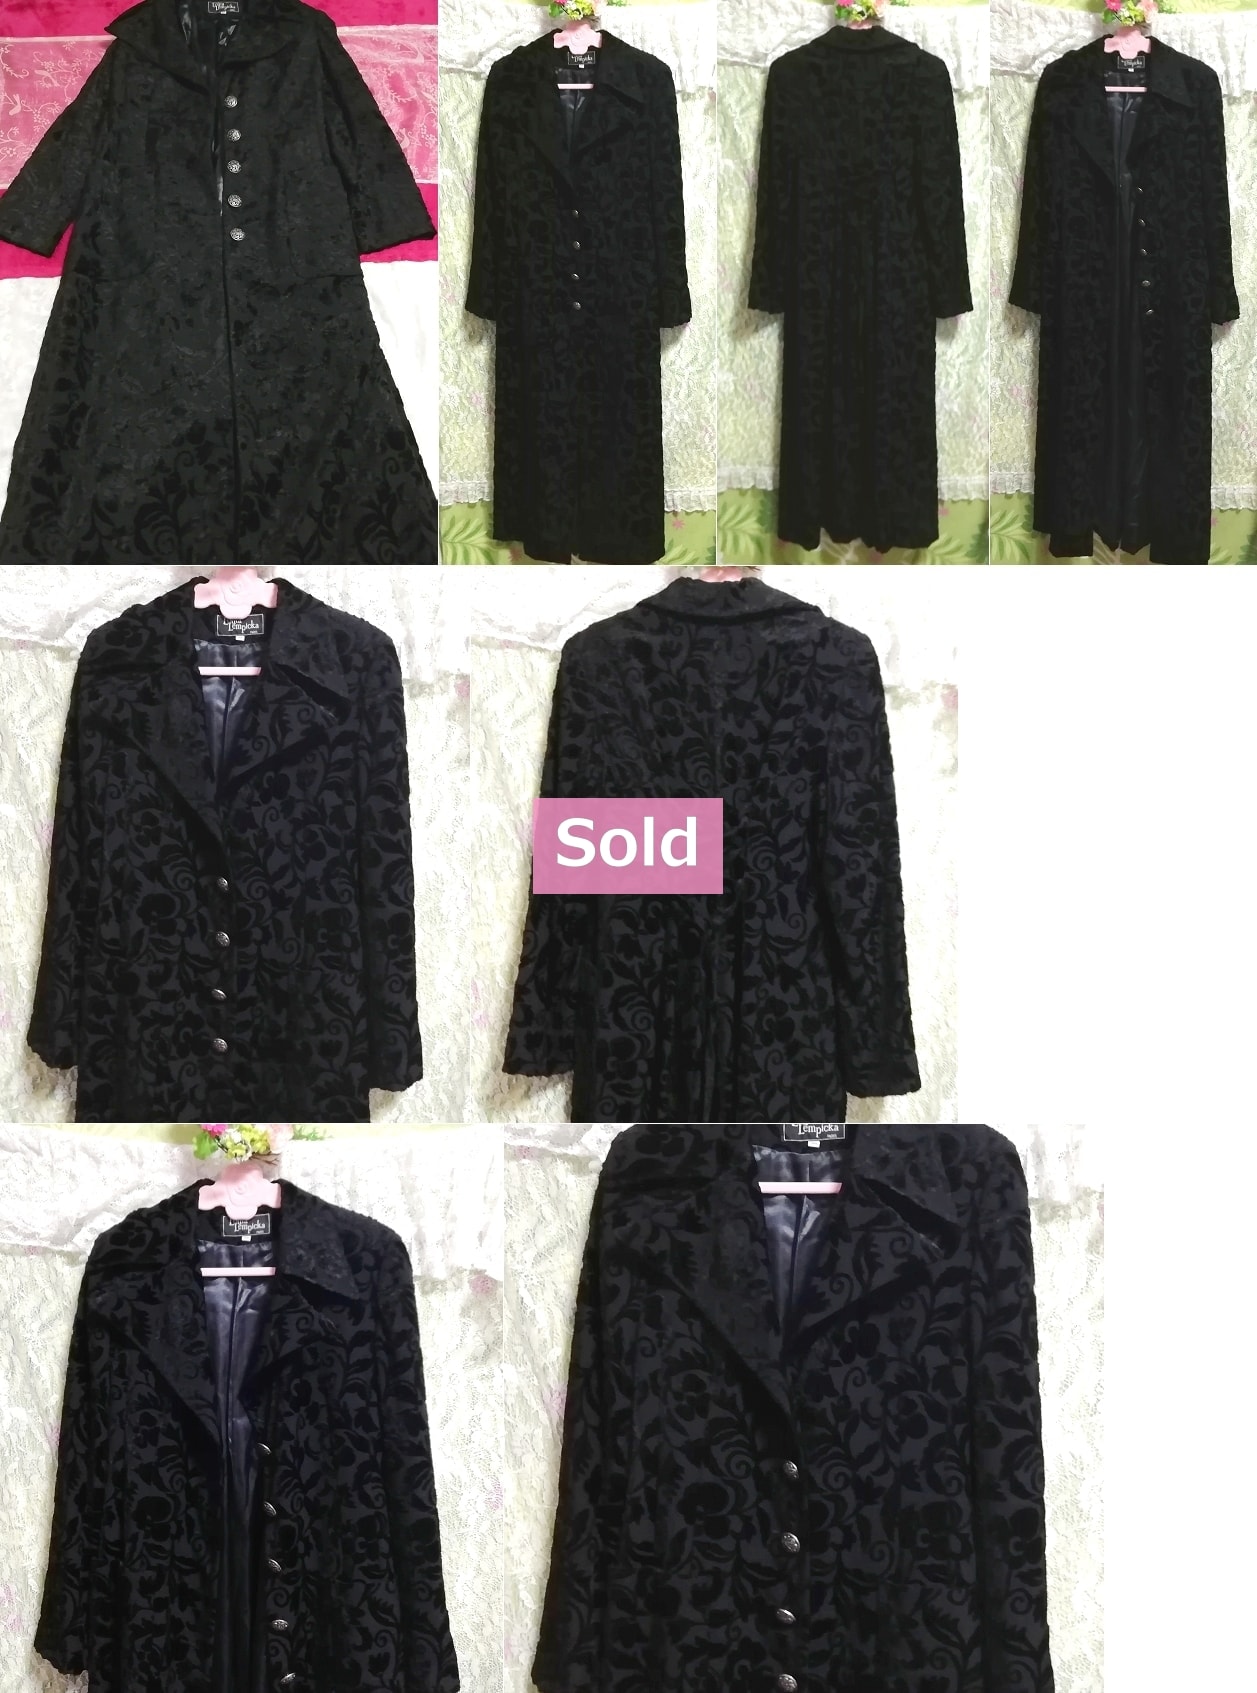 黒ブラック花柄刺繍ロングマキシトレンチコート/外套/上着/羽織 Black flower pattern embroidery long maxi trench coat/jacket